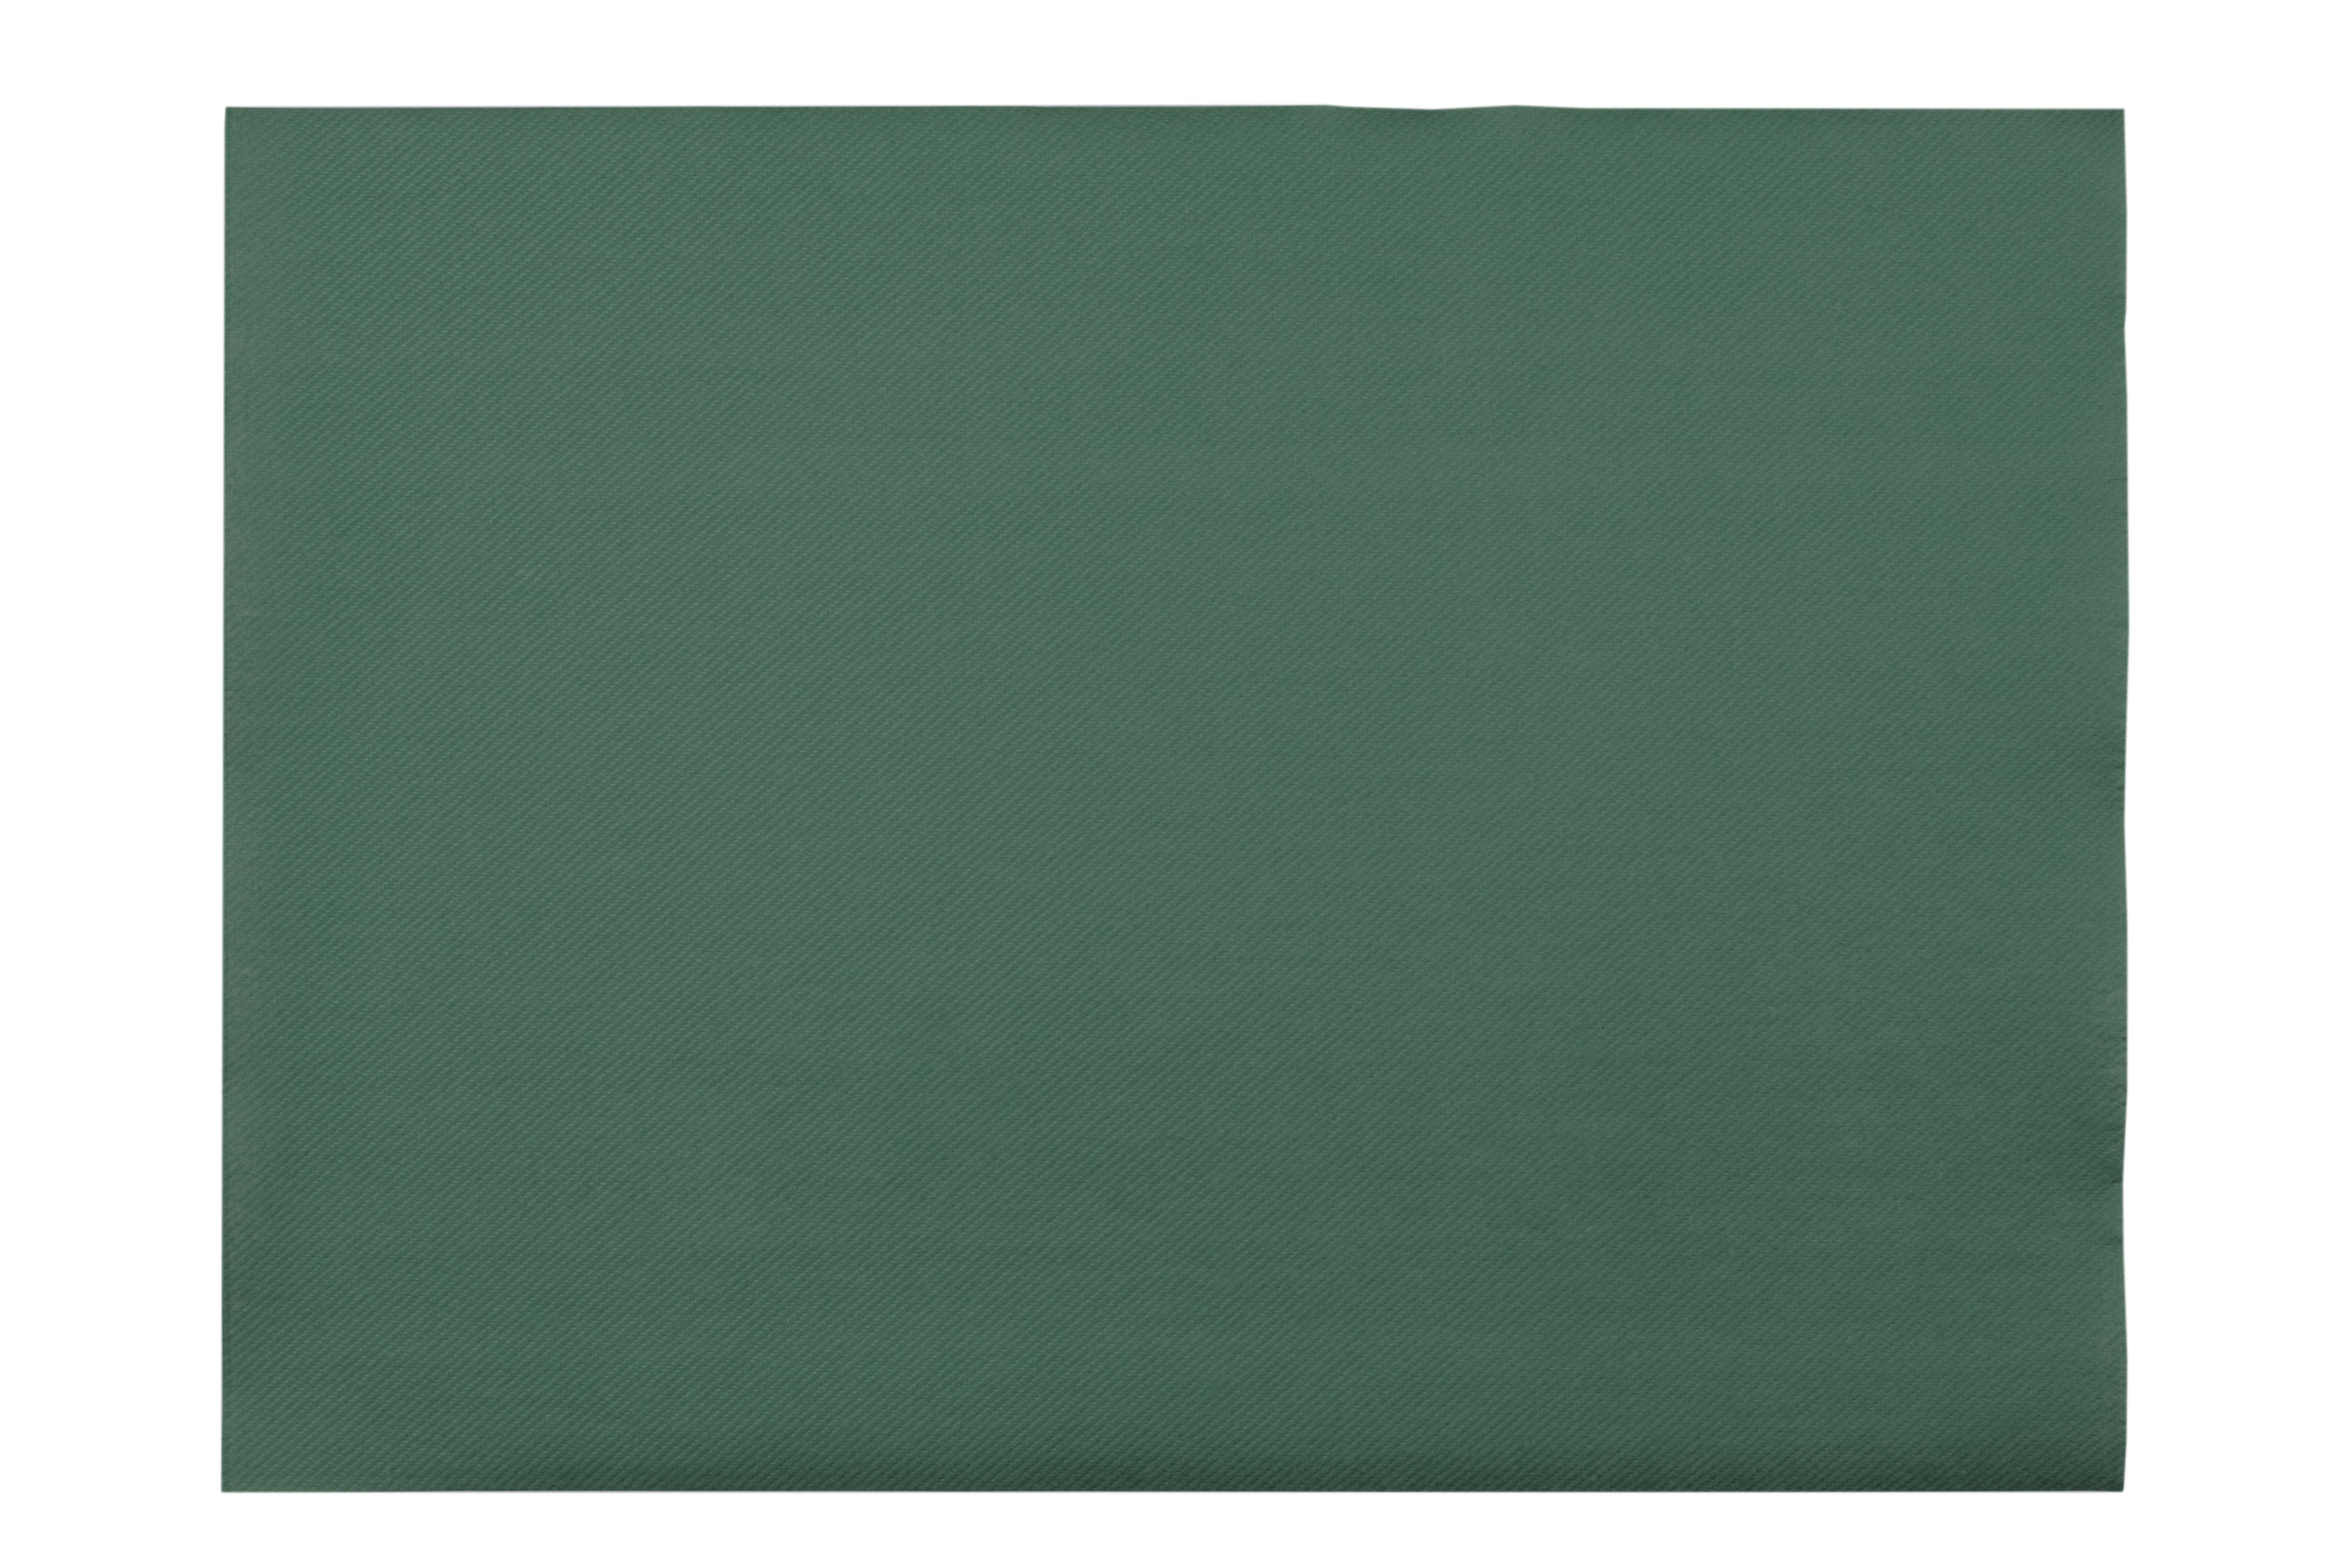 Mank Tischsets Linclass 40 x 30 cm, Basic dunkelgrün